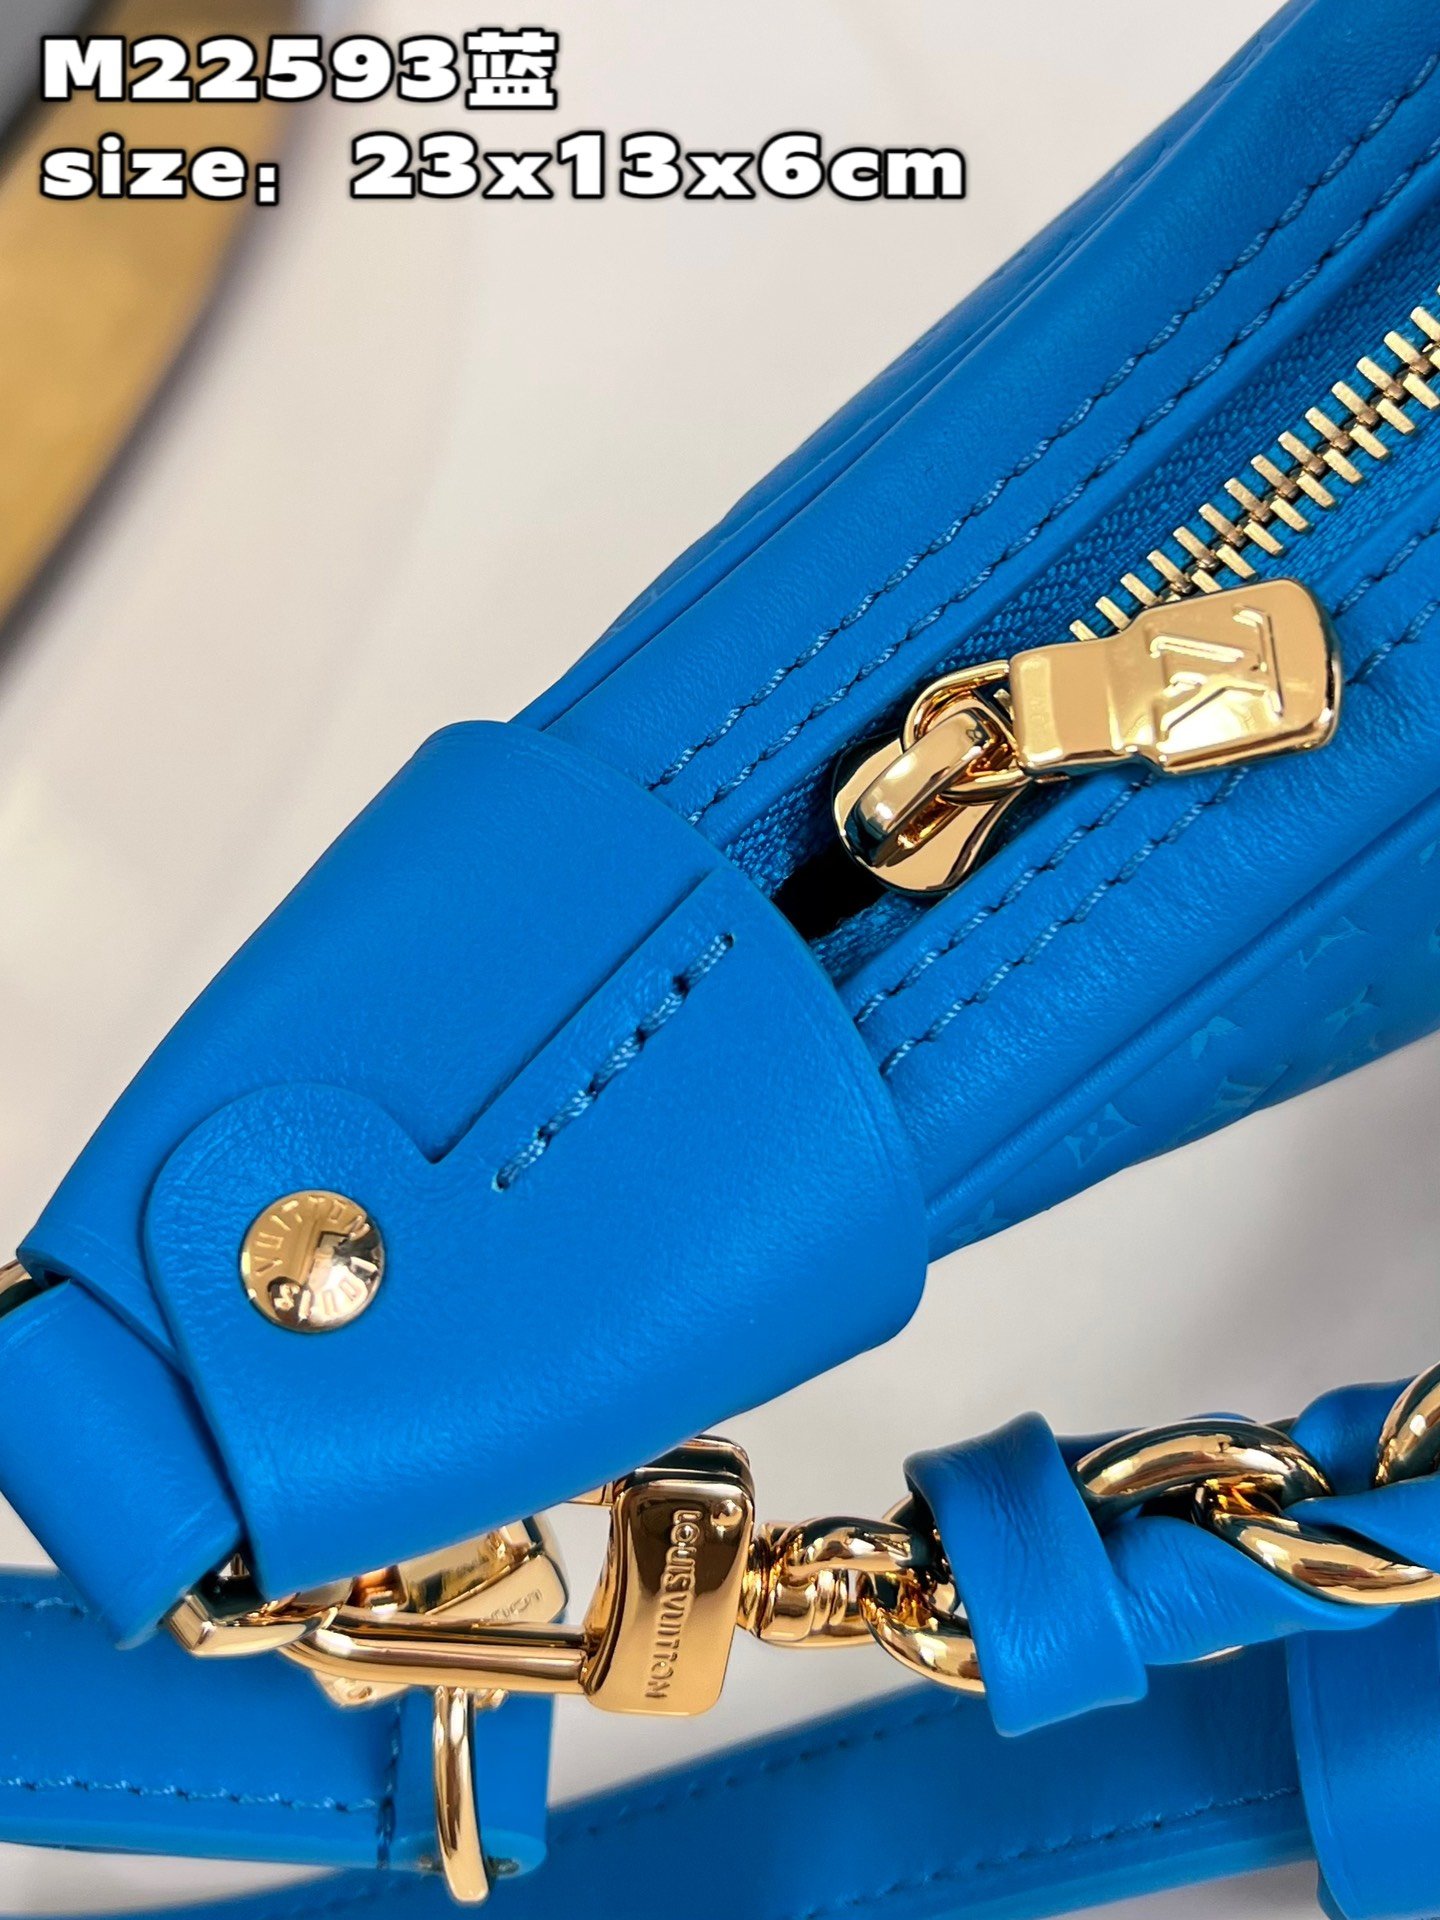 顶级原单MM22593蓝由牛皮革制成的Loop手袋饰有微缩版Monogram花纹彩色丝印LV字母标识和M